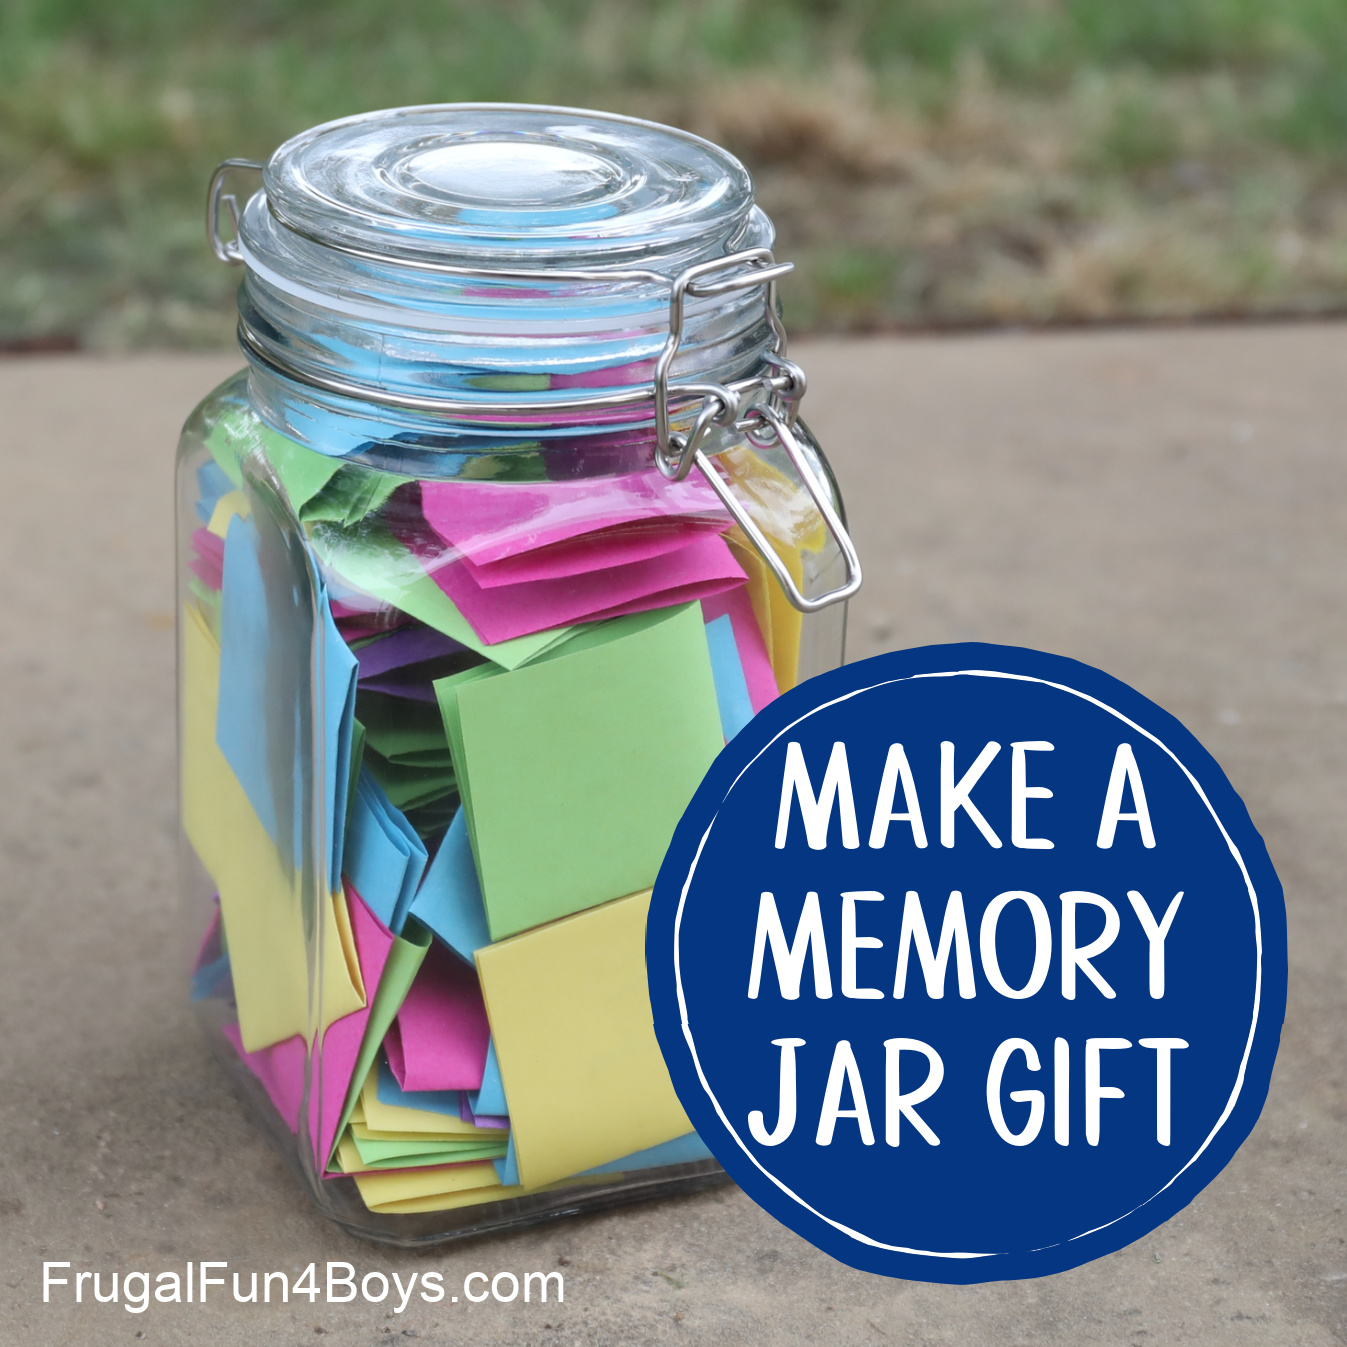 Memory Jar Gift Idea - Fill a jar with handwritten memories!